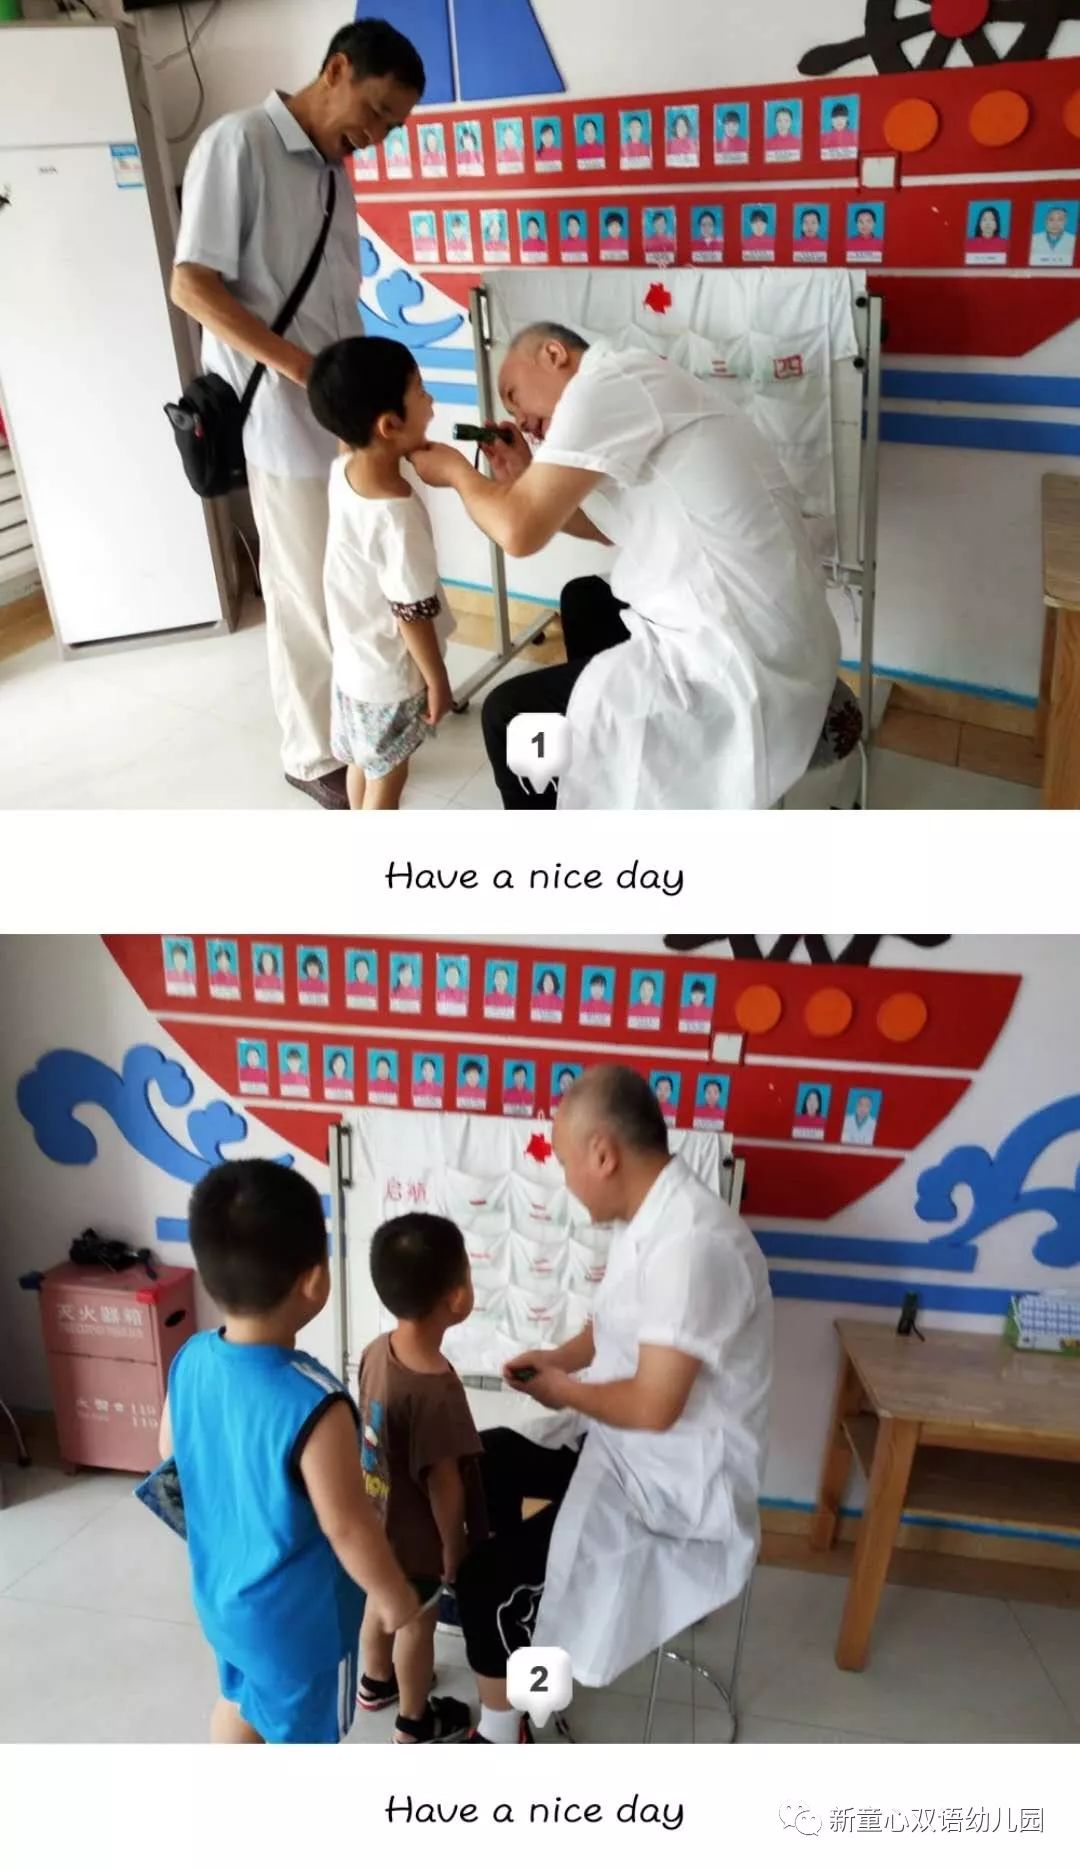 天津提出疫情防控新要求，测温机器人助力幼儿园晨午晚检疾病排查--贝宝娃幼儿园人工智能幼儿园晨检机器人